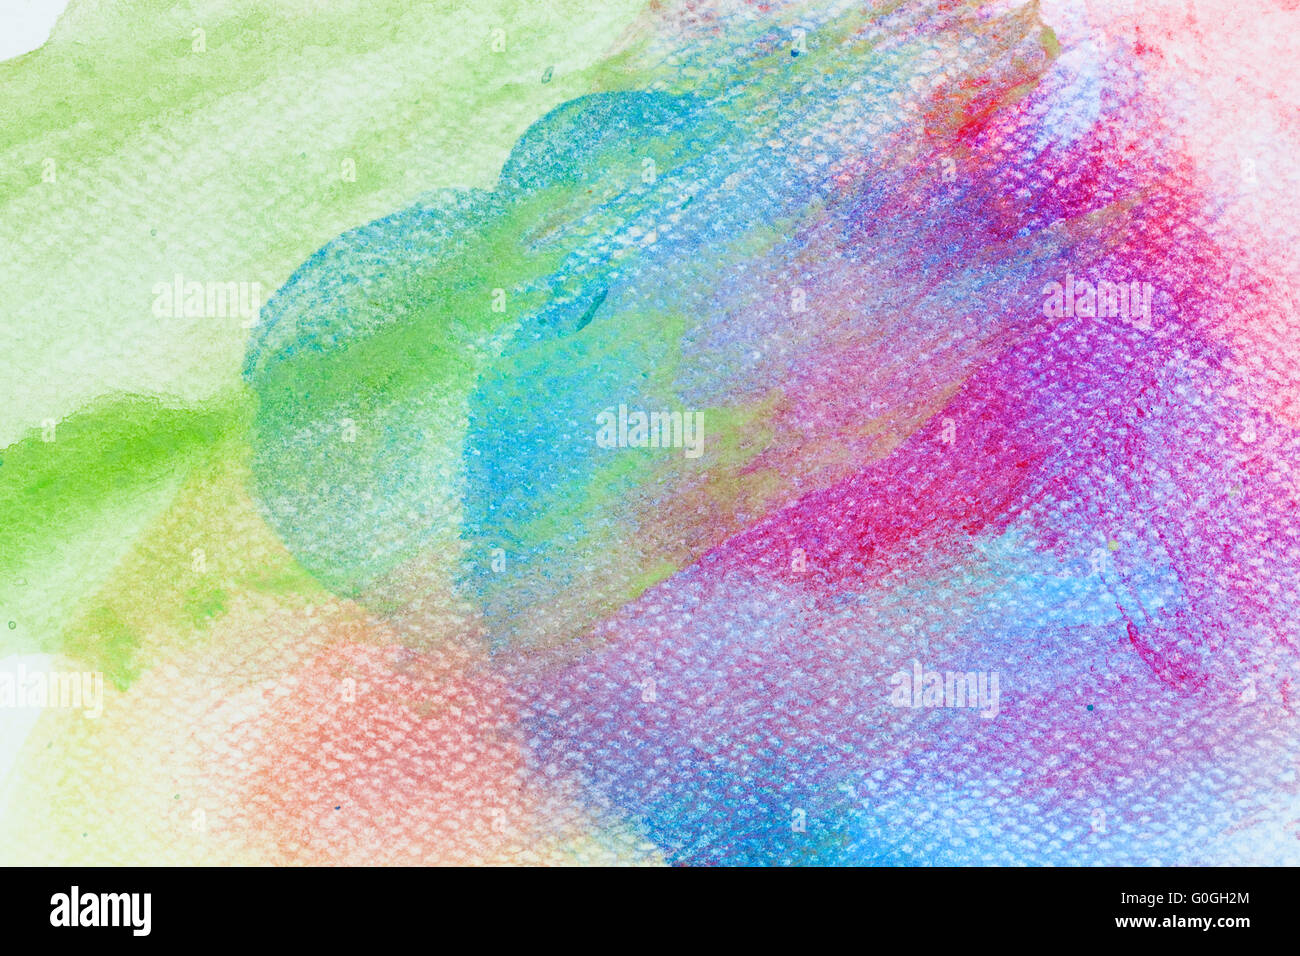 Bunte Aquarell malen auf Leinwand. Super hohe Auflösung und Qualität Hintergrund Stockfoto